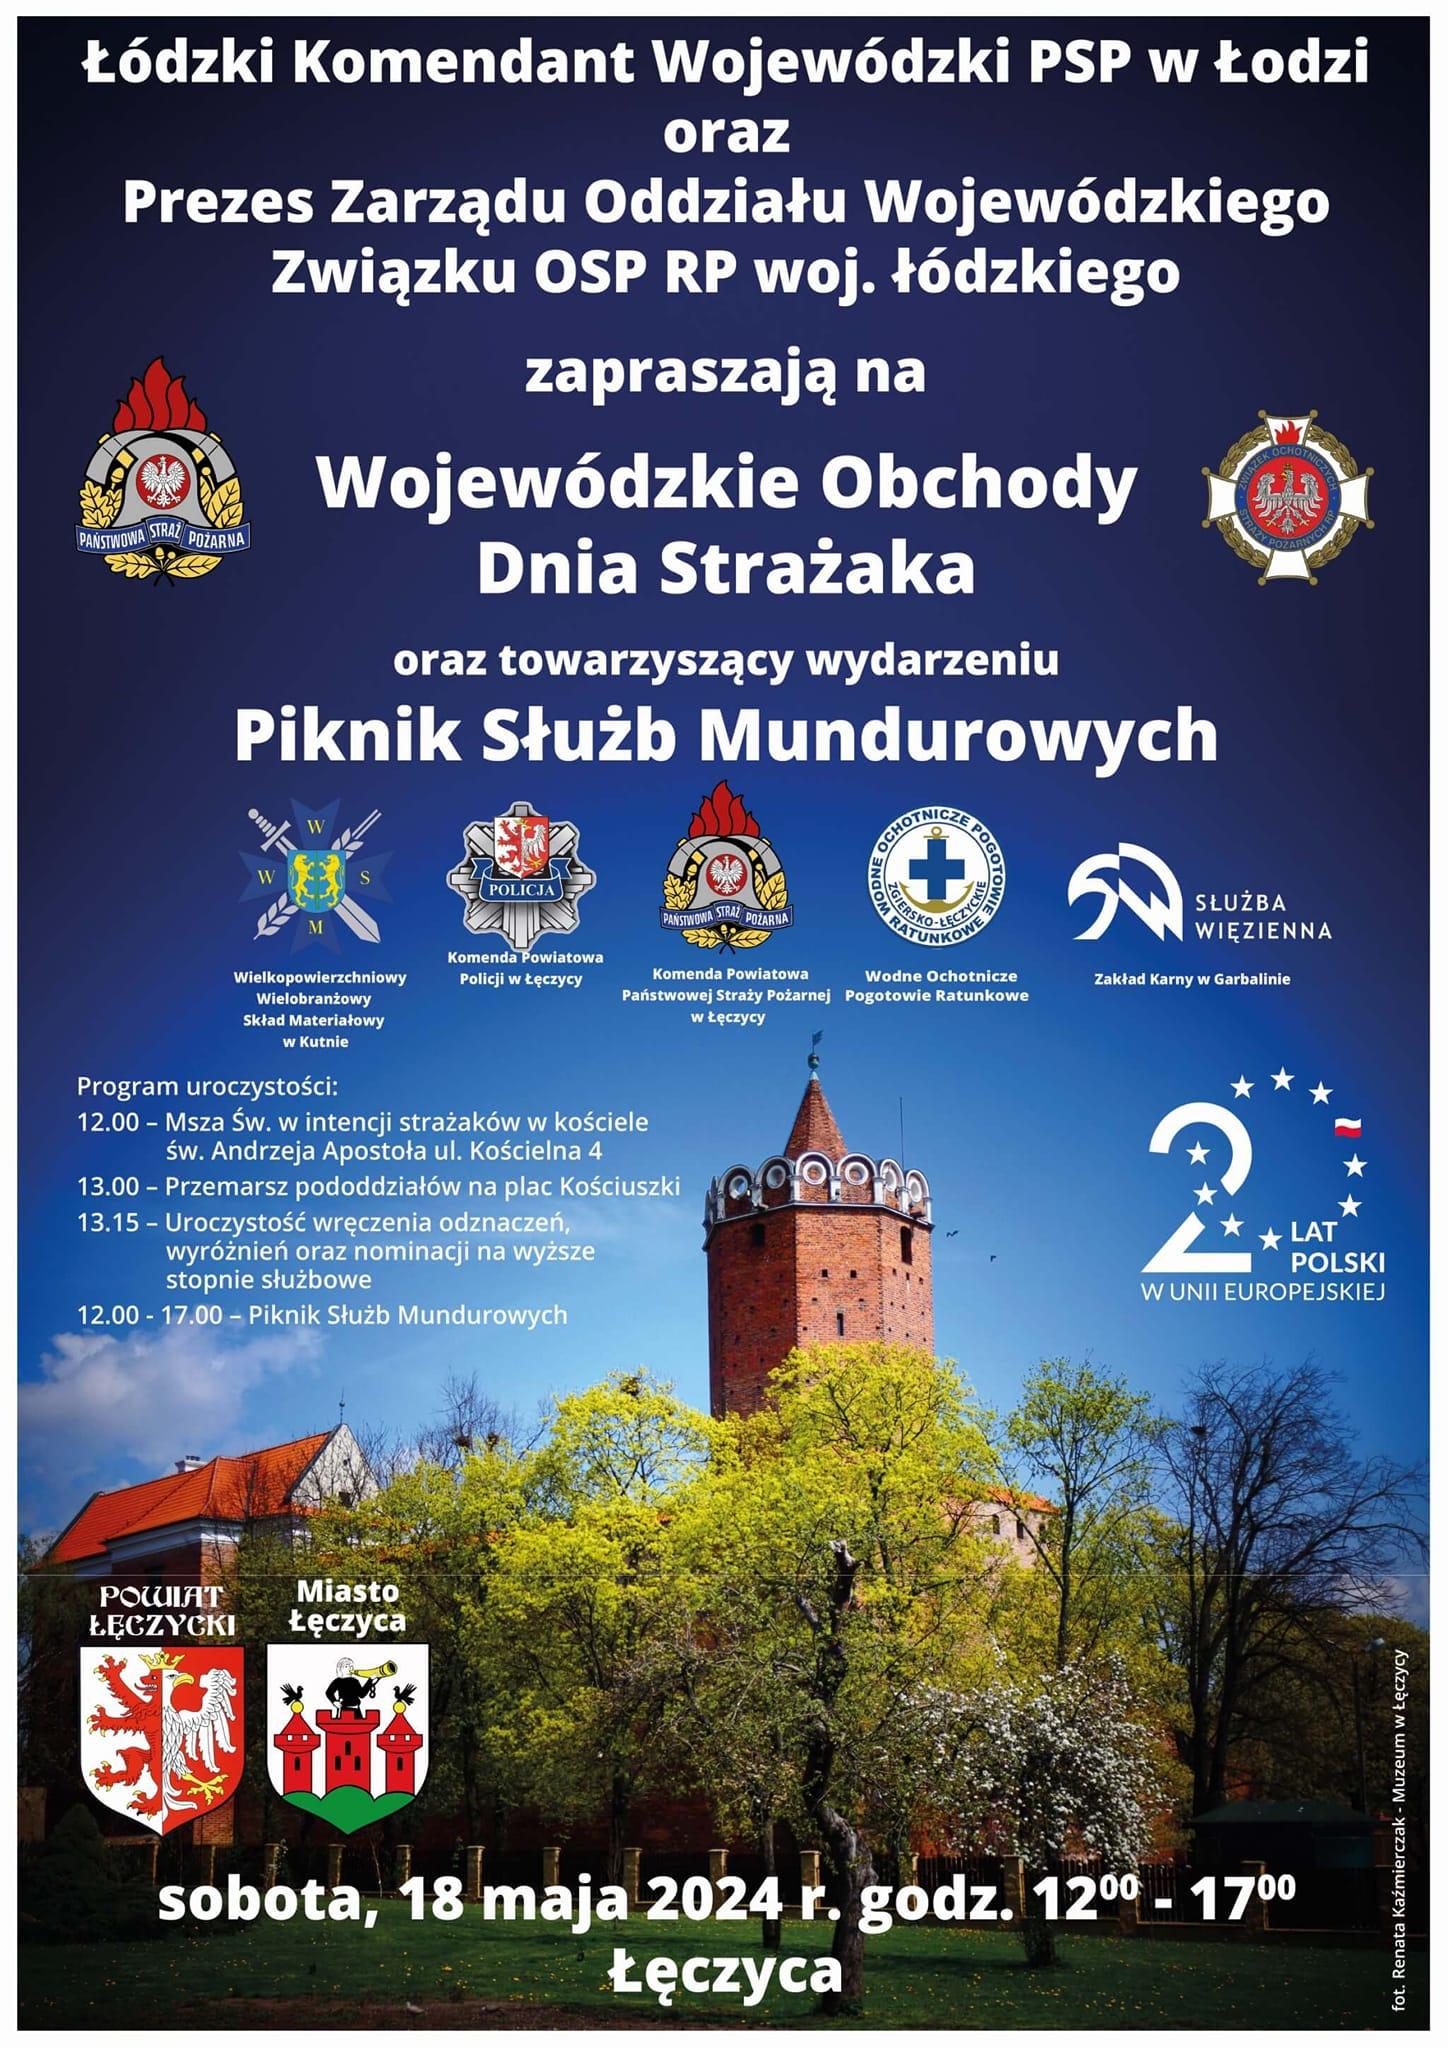 Zapraszamy na Wojewódzkie Obchody Dnia Strażaka - sobota, 18 maja, Łęczyca - od godz. 12.00